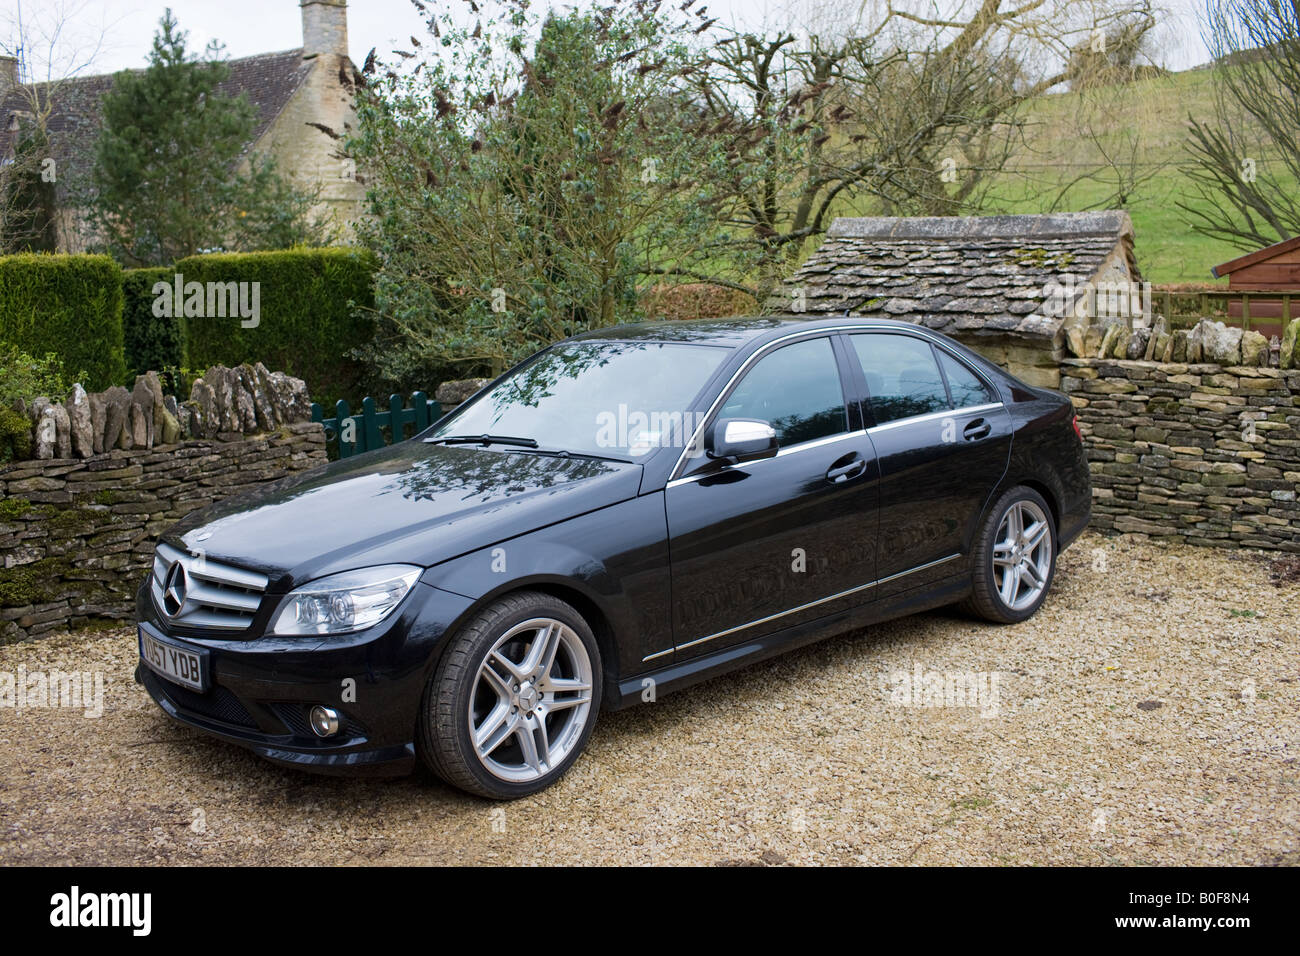 Mercedes C350 noir berline sport Cotswolds Oxfordshire Royaume-Uni Banque D'Images